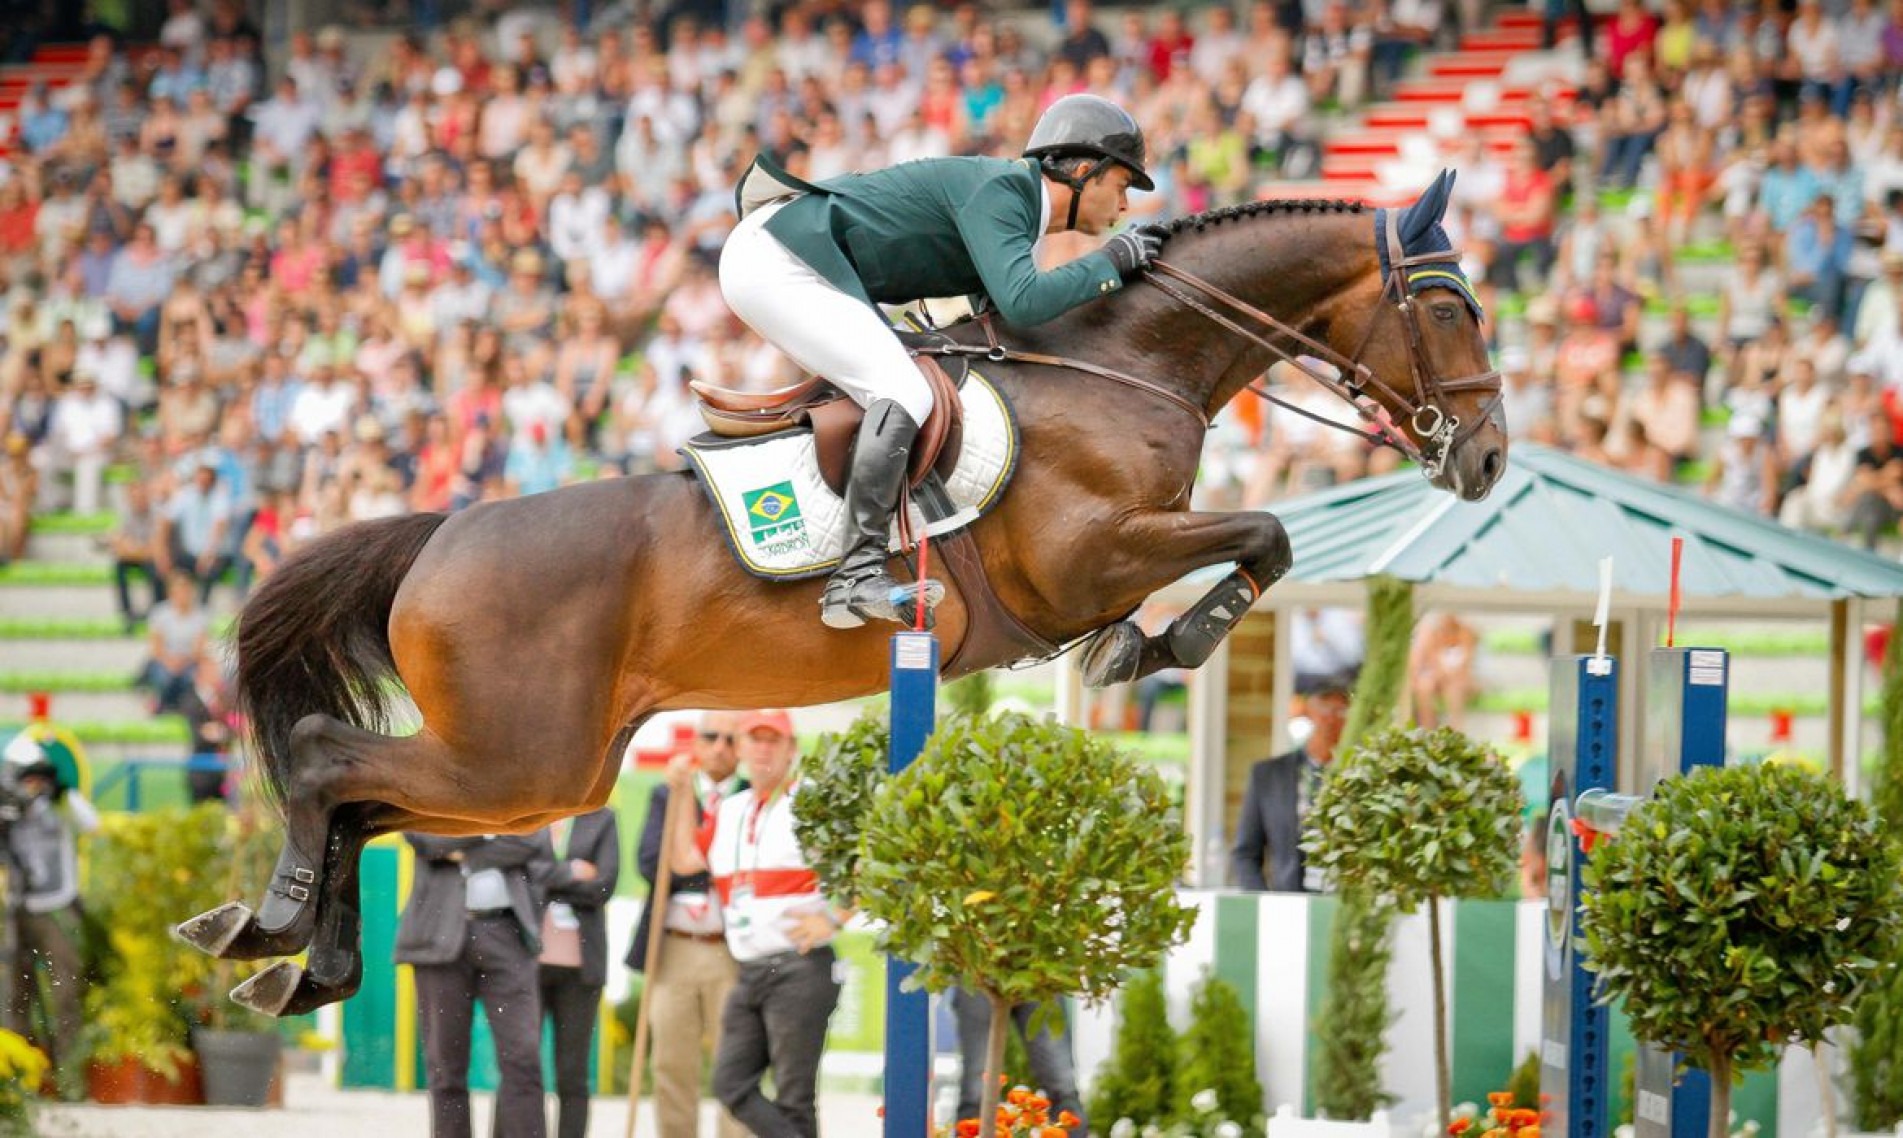 Medalhista de ouro em Atenas, o cavaleiro Rodrigo Pessoa em competição com o cavalo Status Luis Ruas/CBH